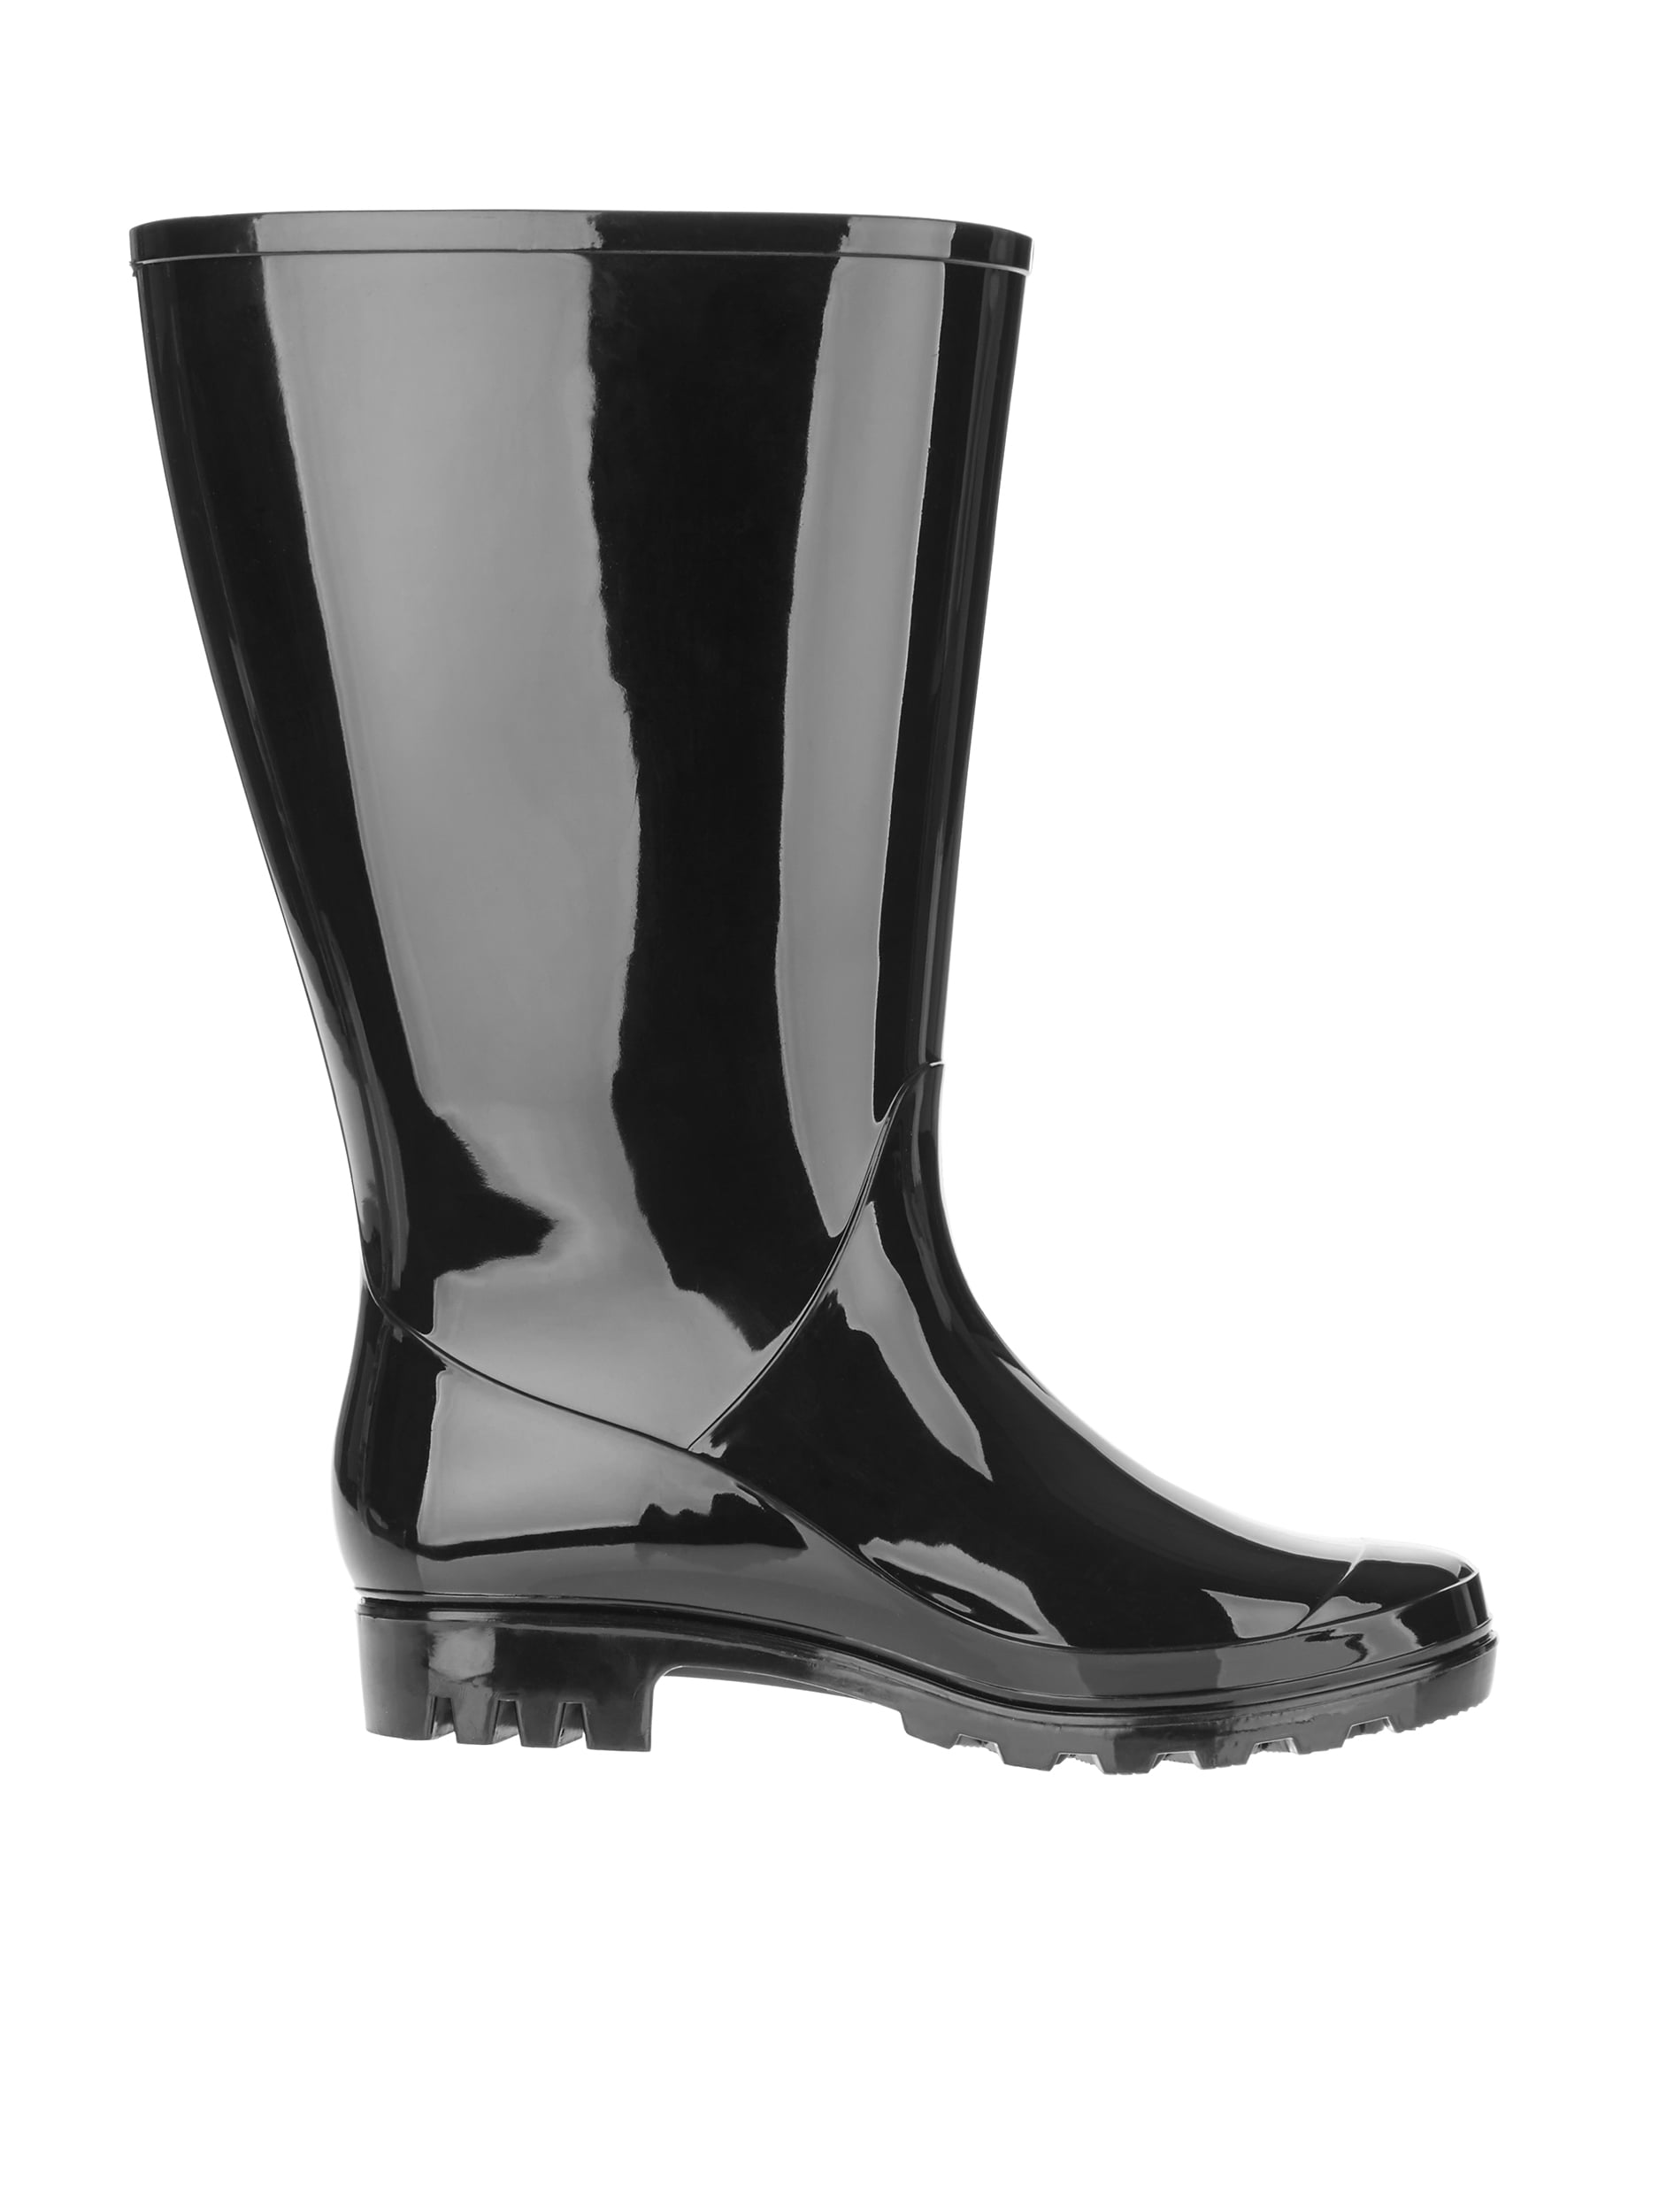 Allure Love Women's Mid Calf Rain Boots Detachable Waterproof Booties Garden Shoes